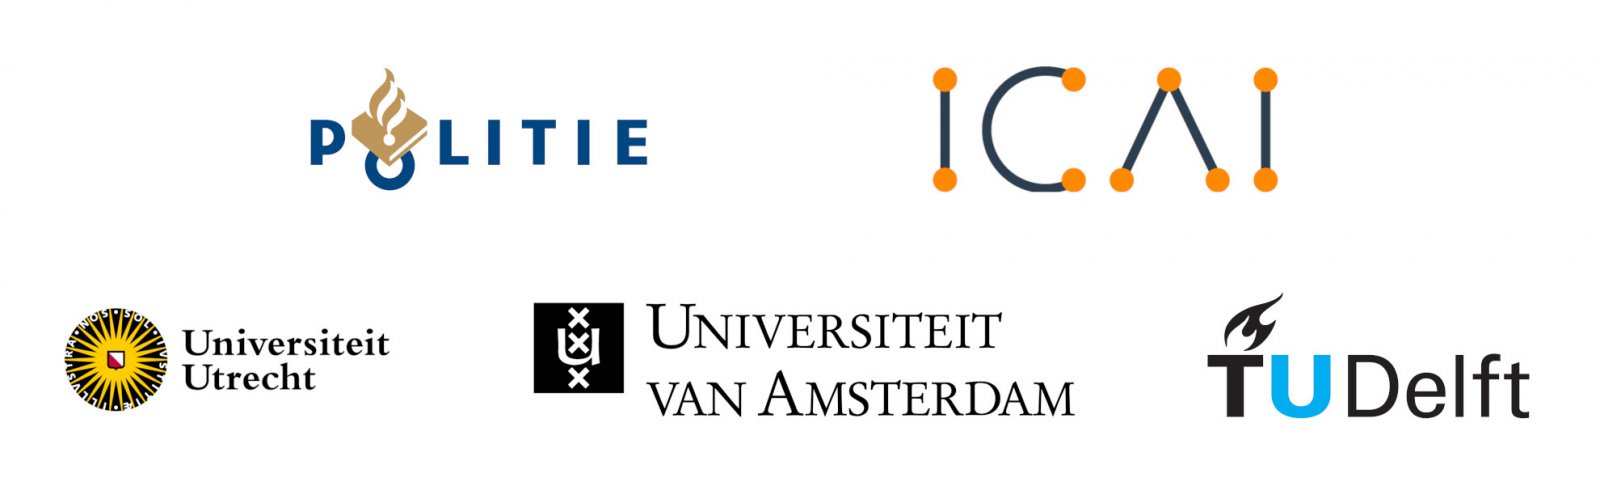 Afbeelding met de logo's van de Nederlandse Politie, ICAI en de drie samenwerkende universiteiten: Universiteit Utrecht, Technische Universiteit Delft en de Universiteit van Amsterdam. 